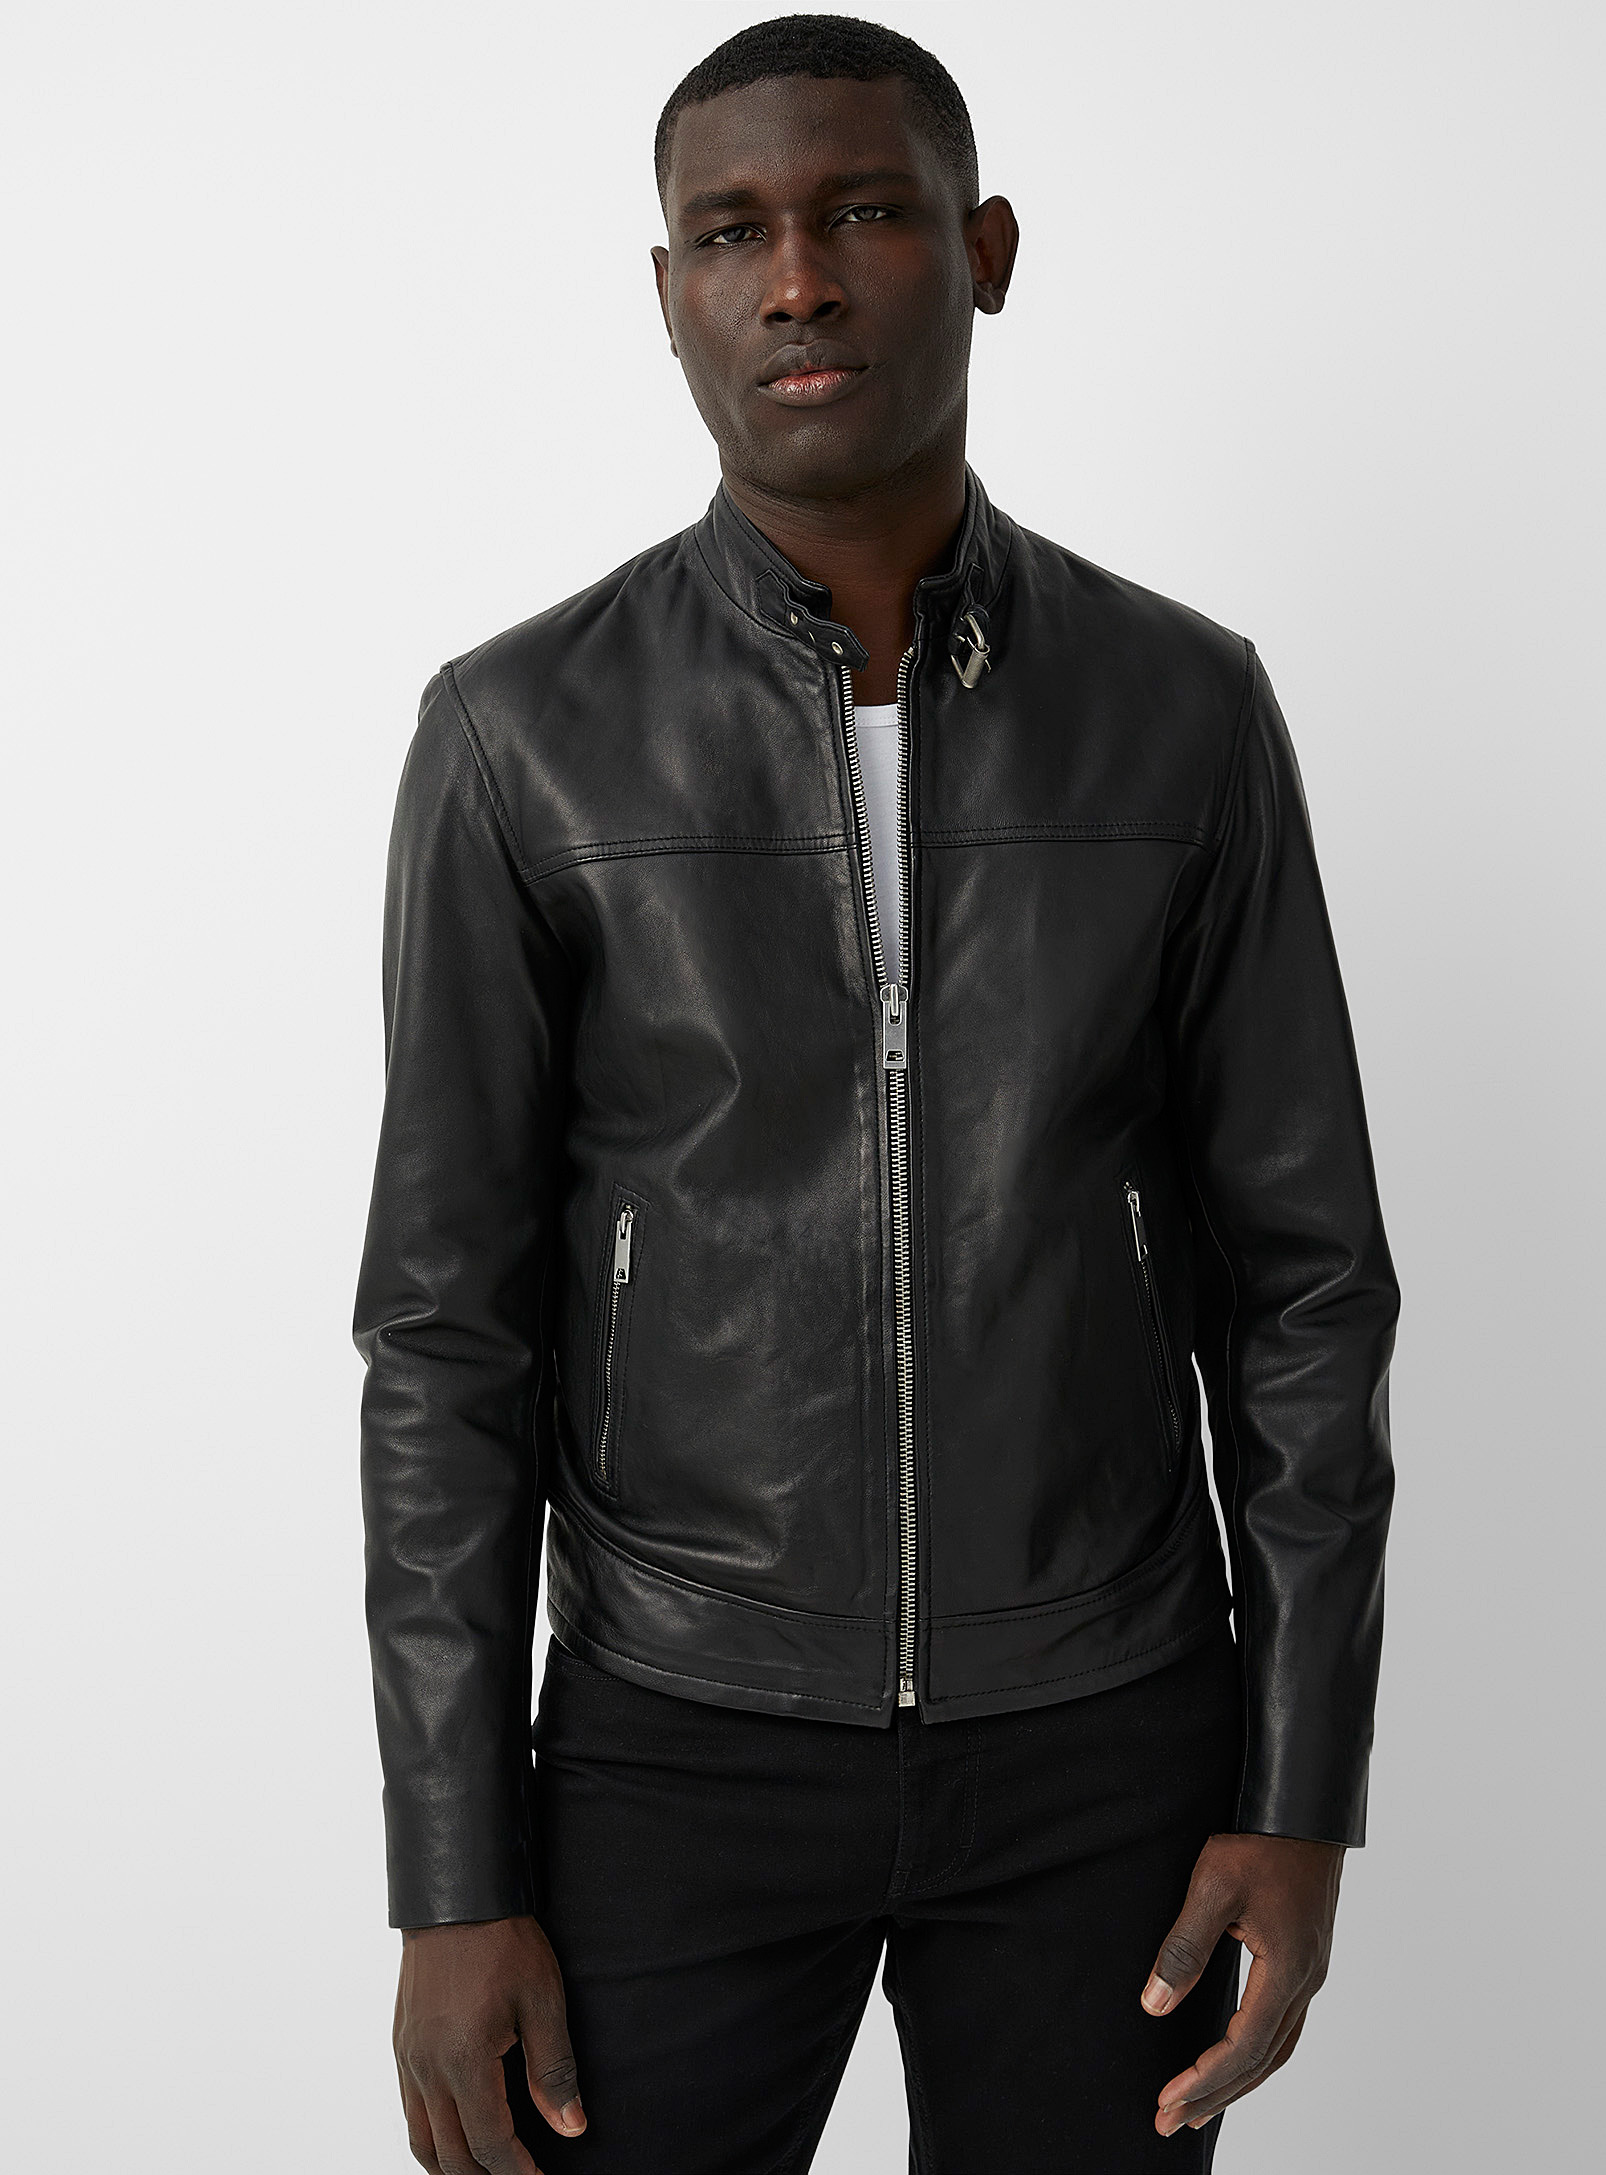 Sly & Co - Men's Minimalist leather biker jacket